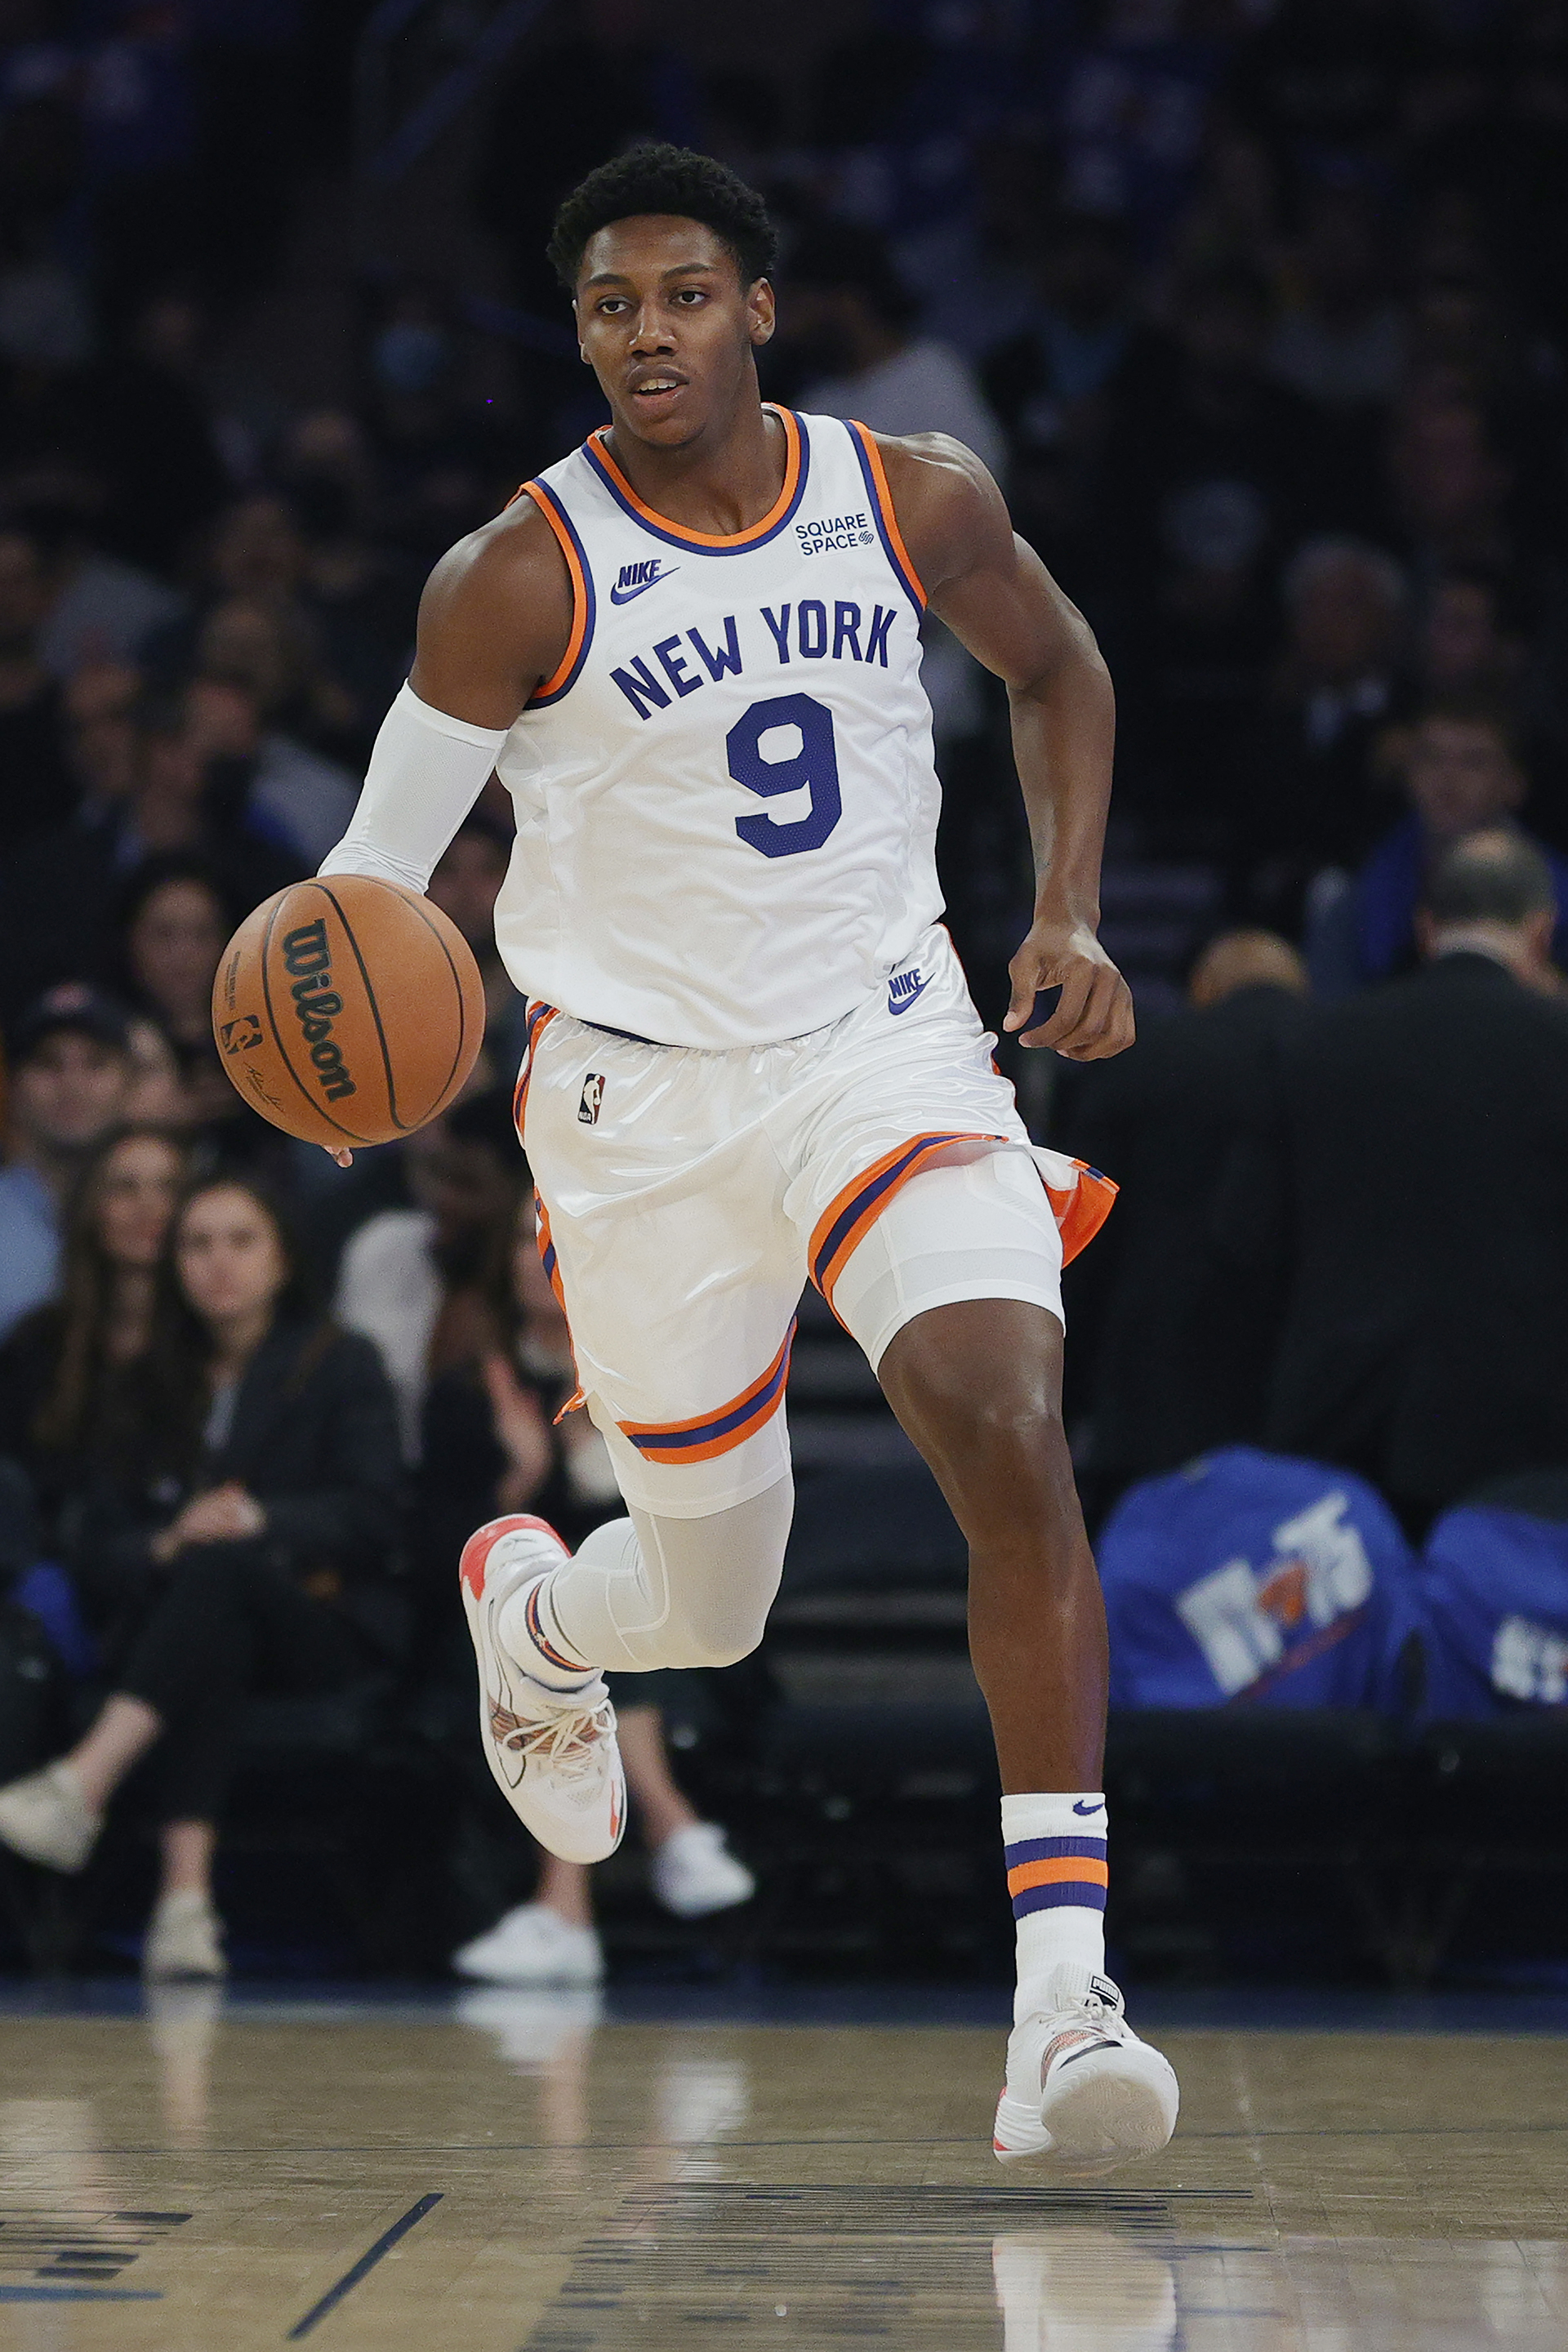 RJ Barrett runs on the court for the New York Knicks.